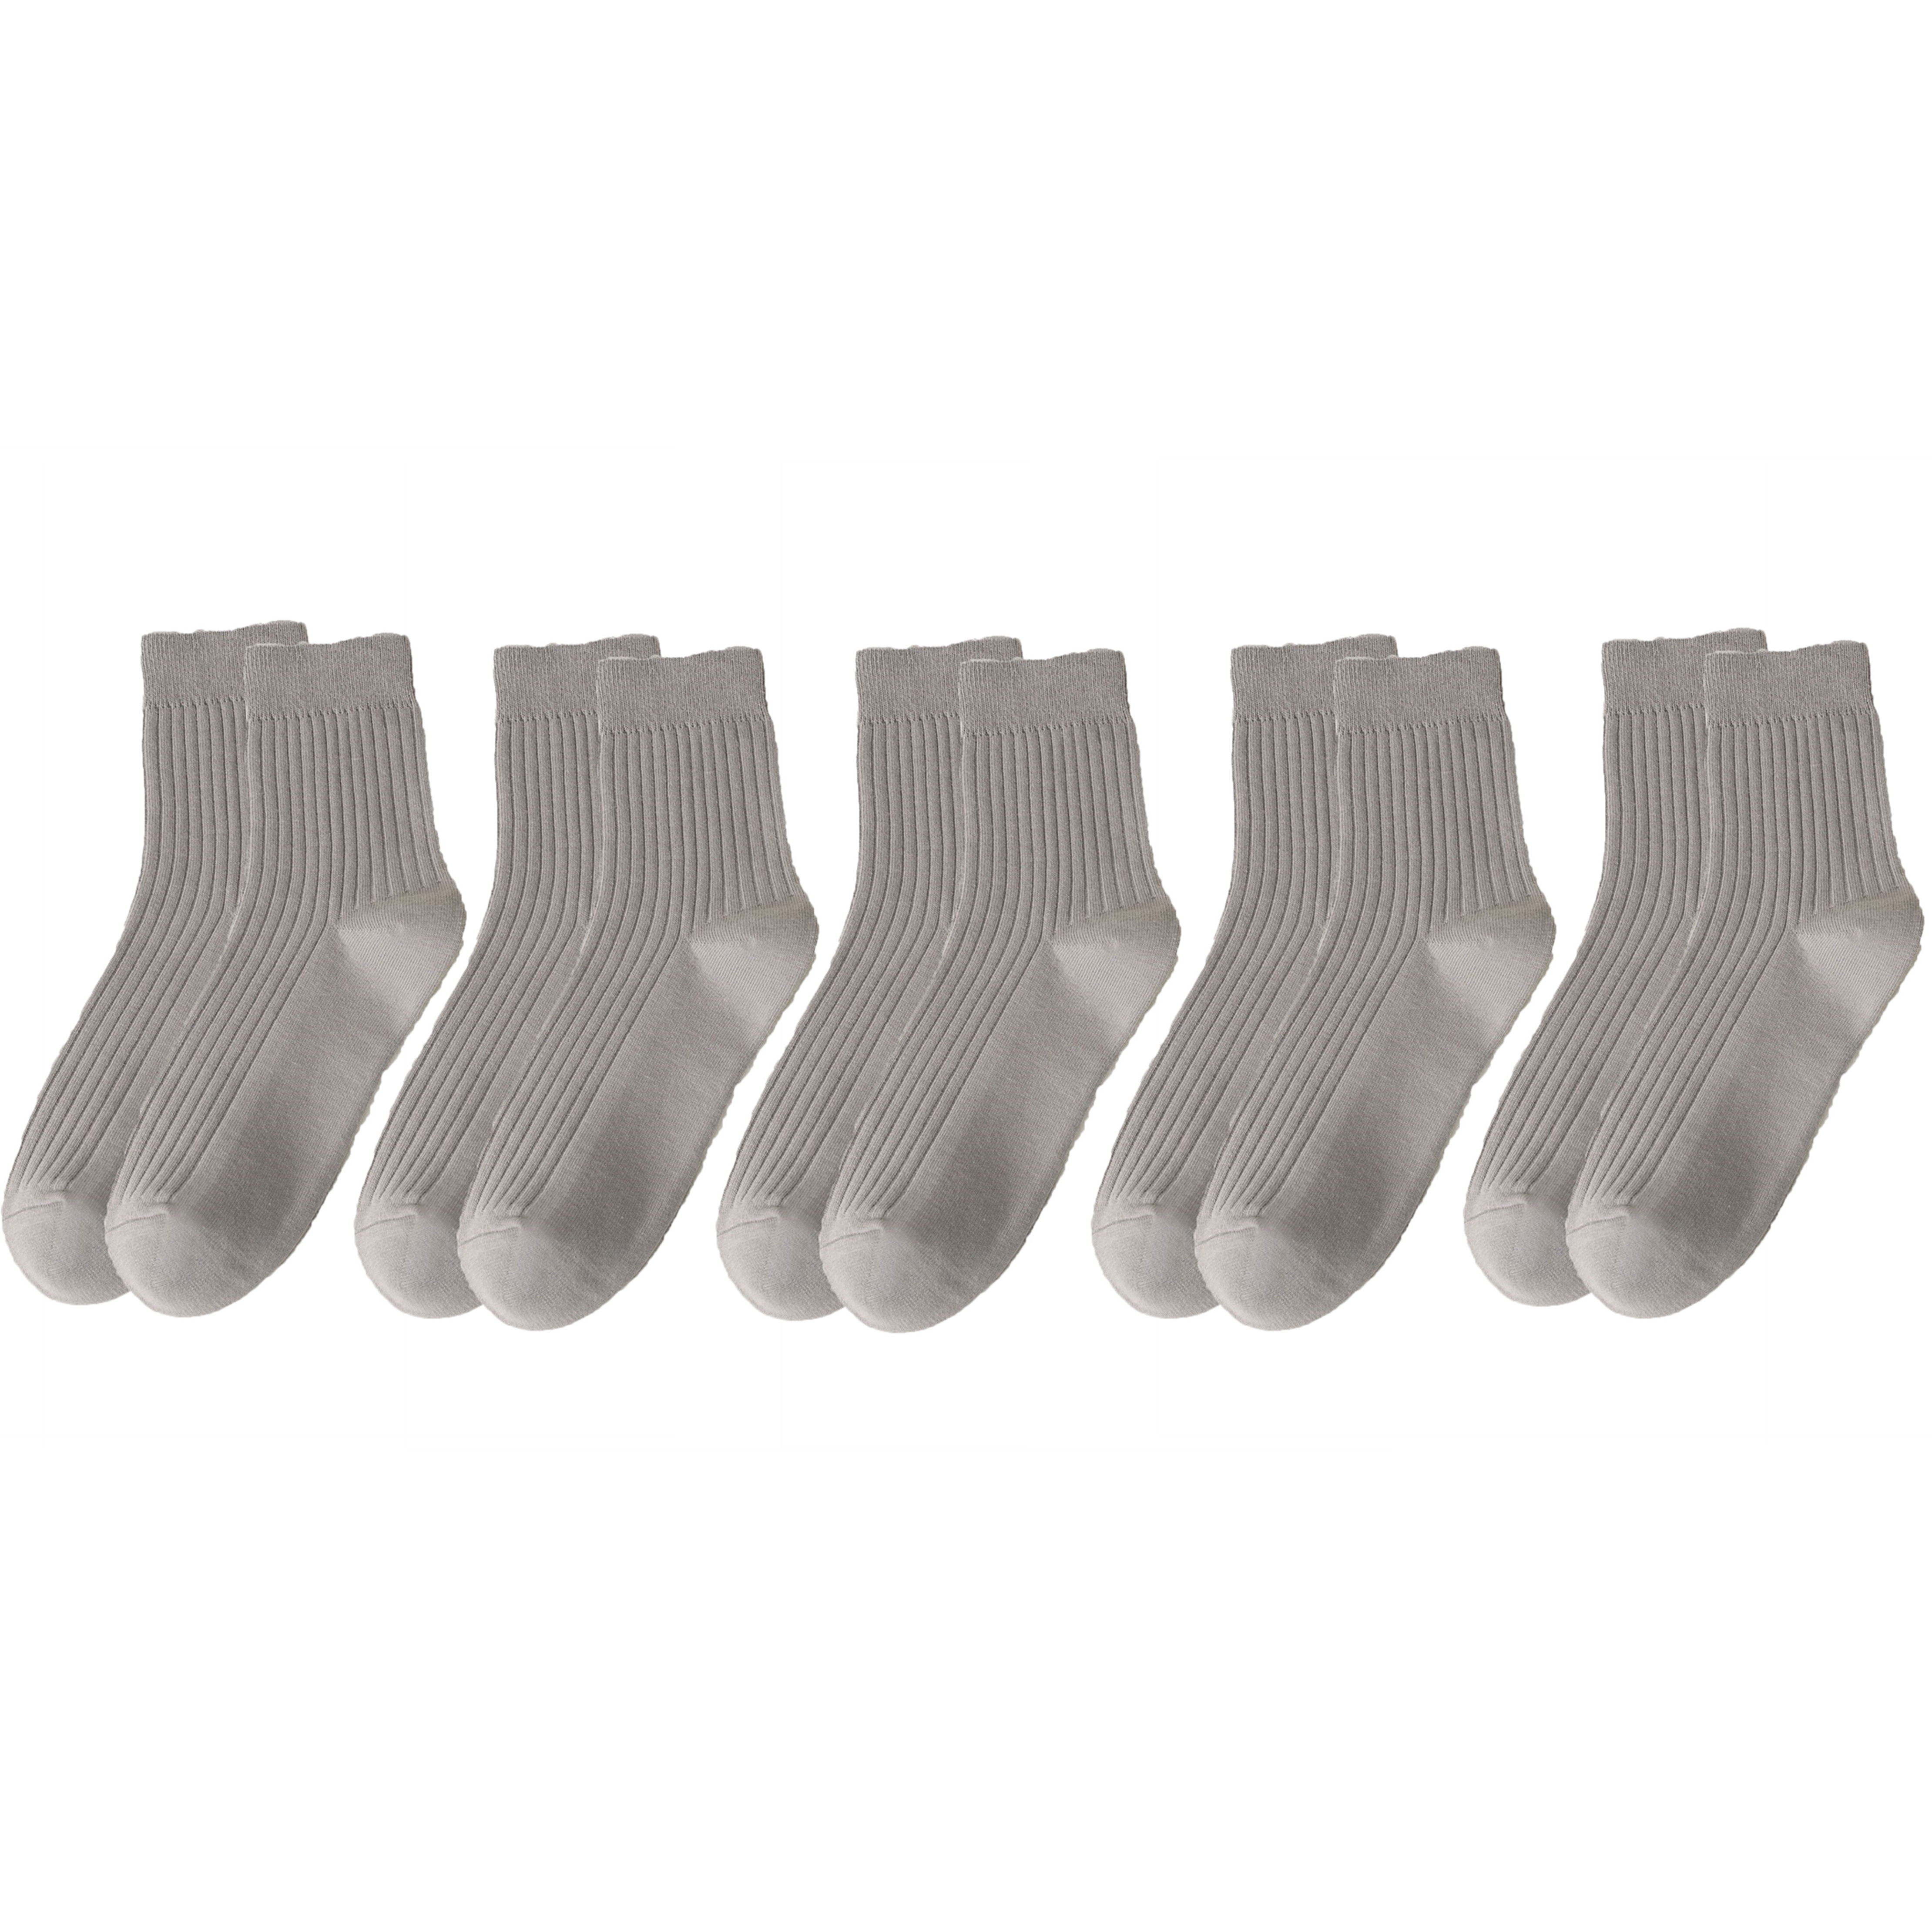 5 Pairs Cotton Socks for Men Light Grey Durable Socks Resistant to Pilling Socks Medium Length